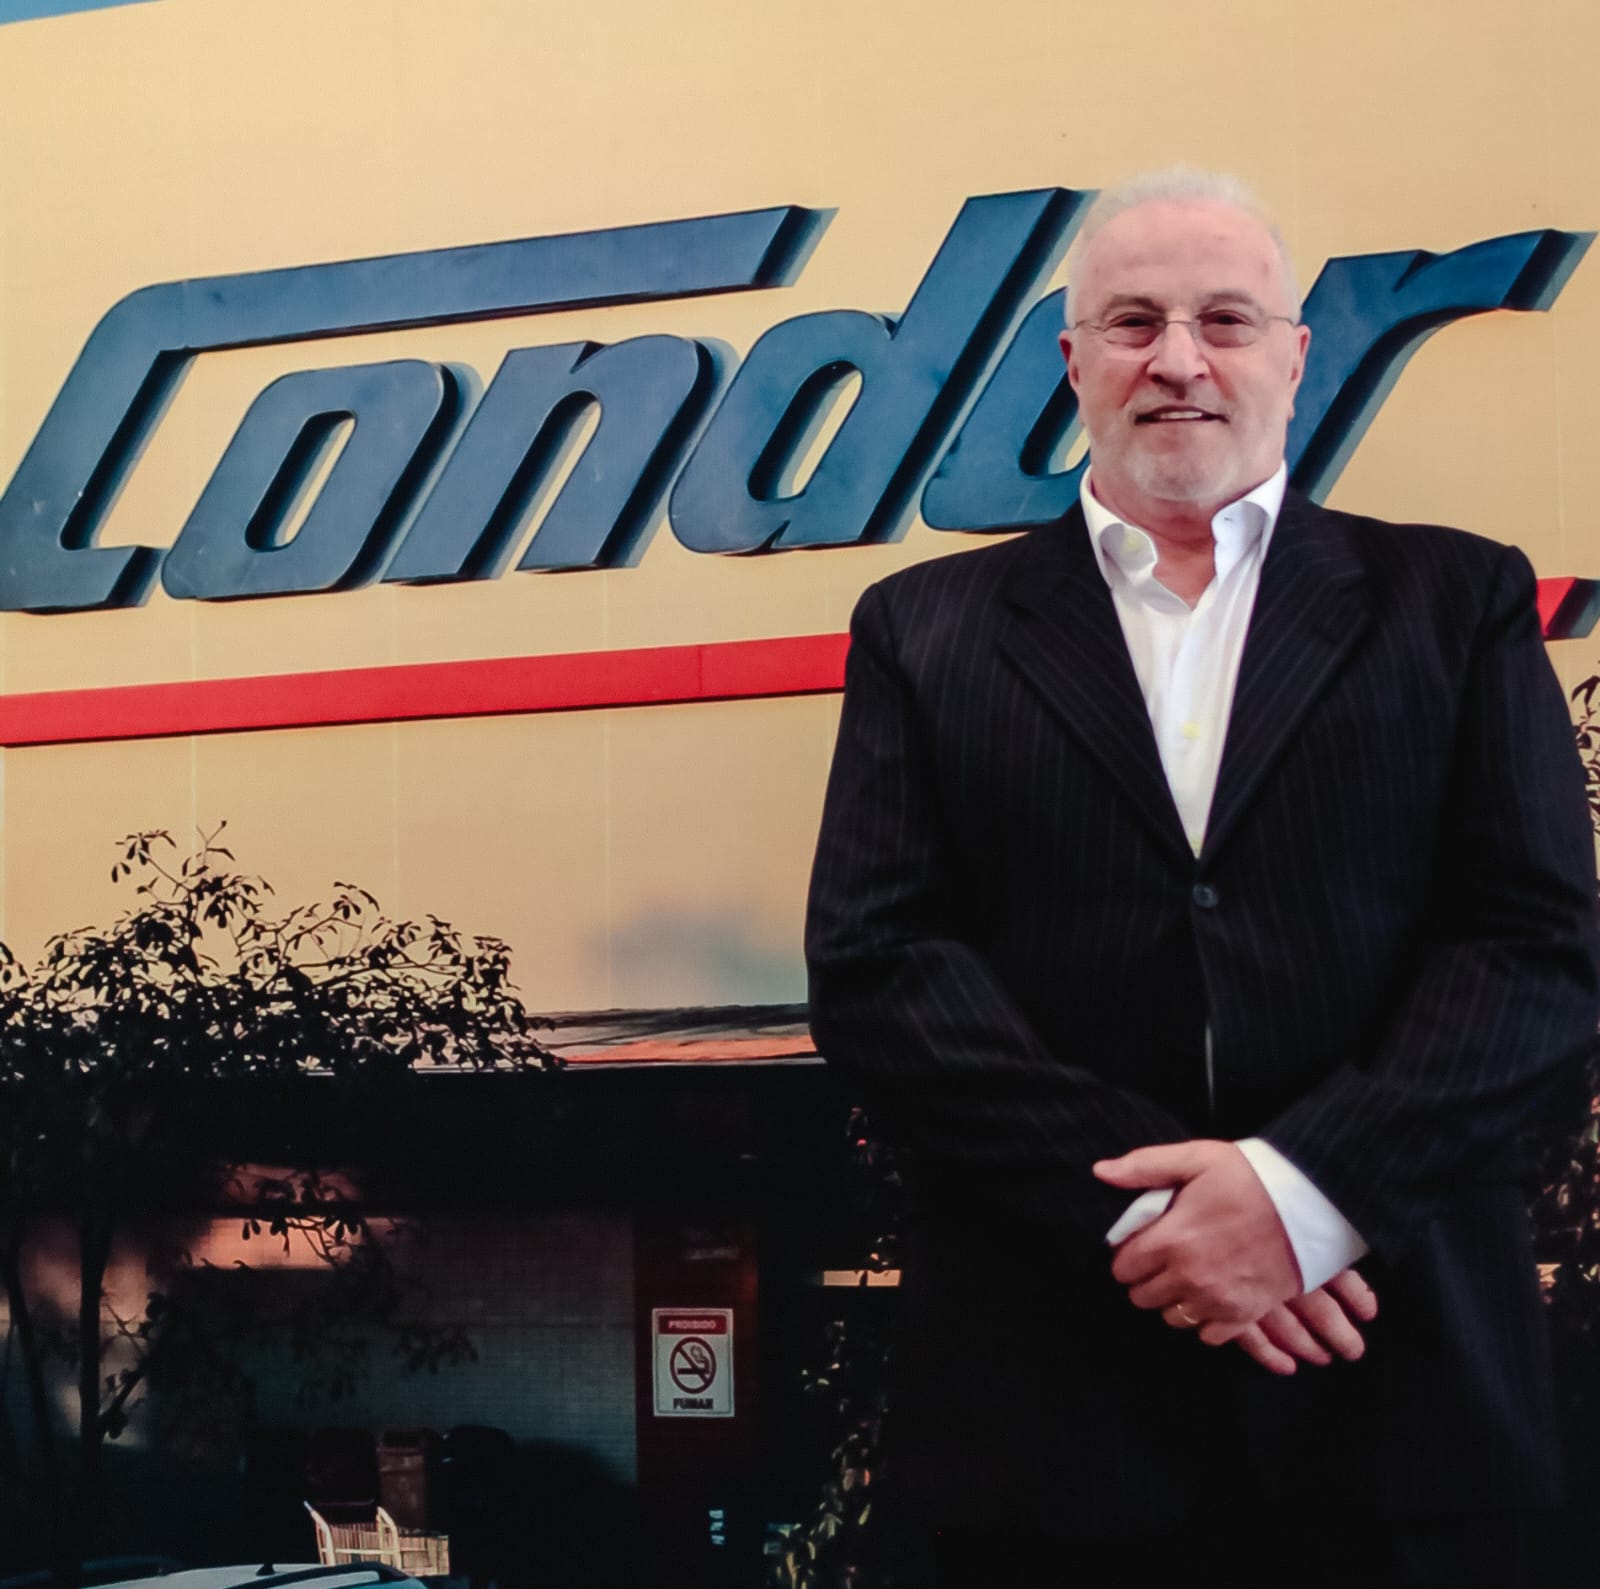 Condor inaugura supermercado no Jardim das Américas com investimento de R$ 50 milhões